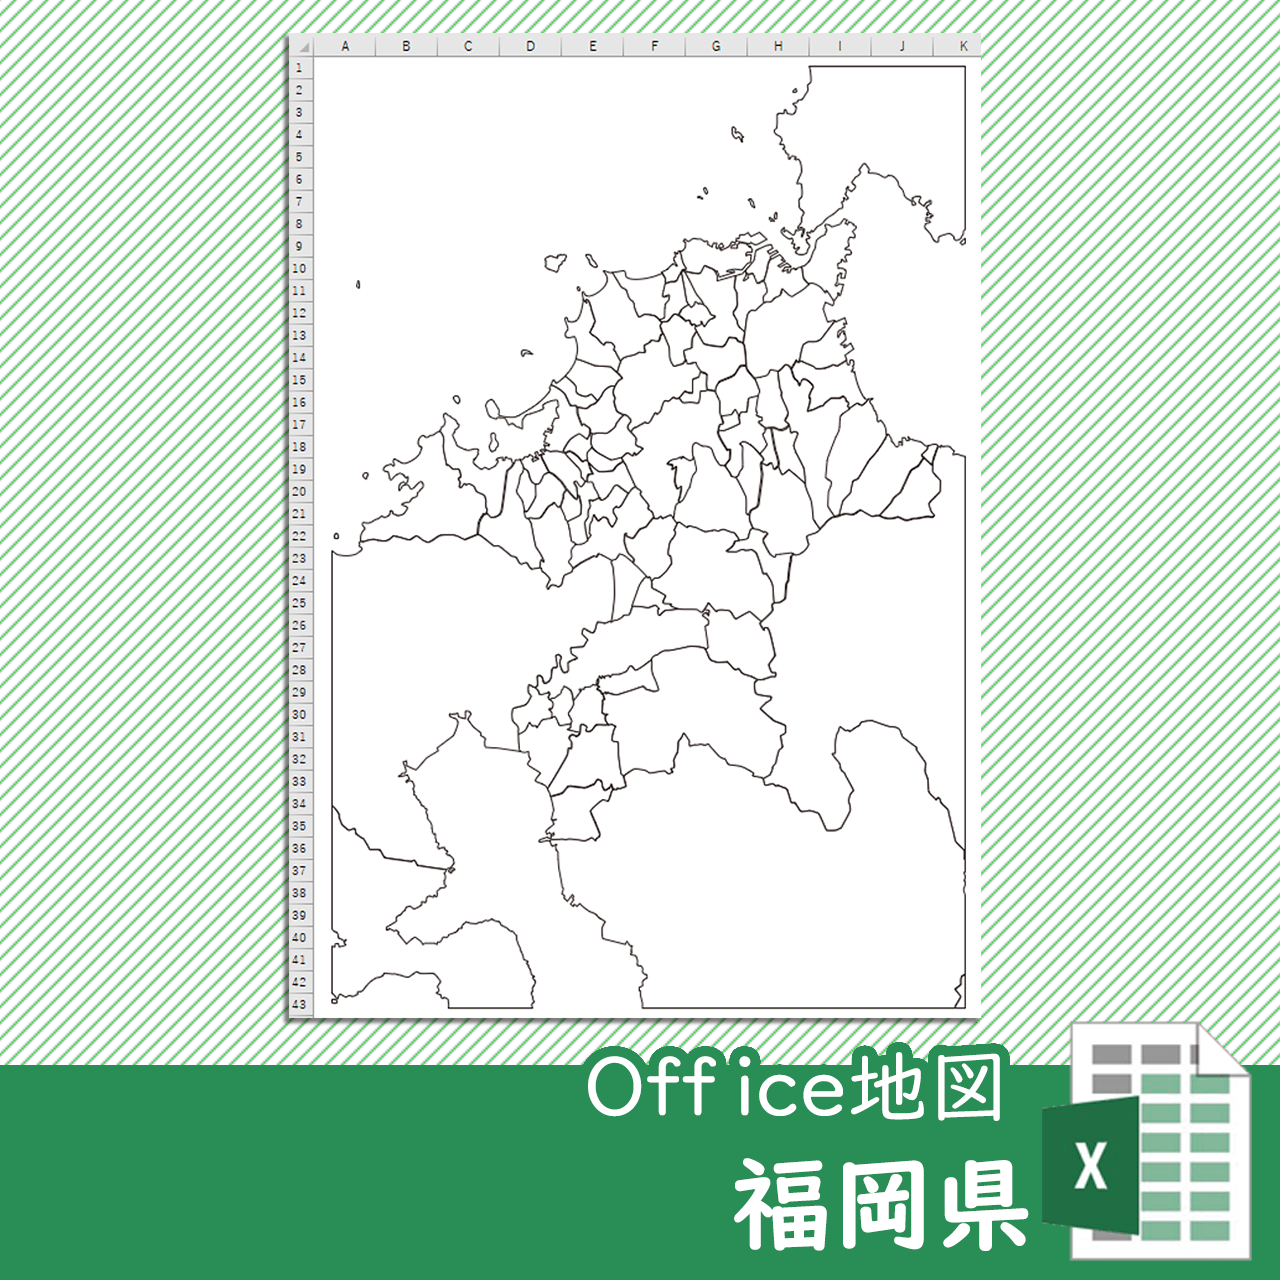 福岡県のoffice地図